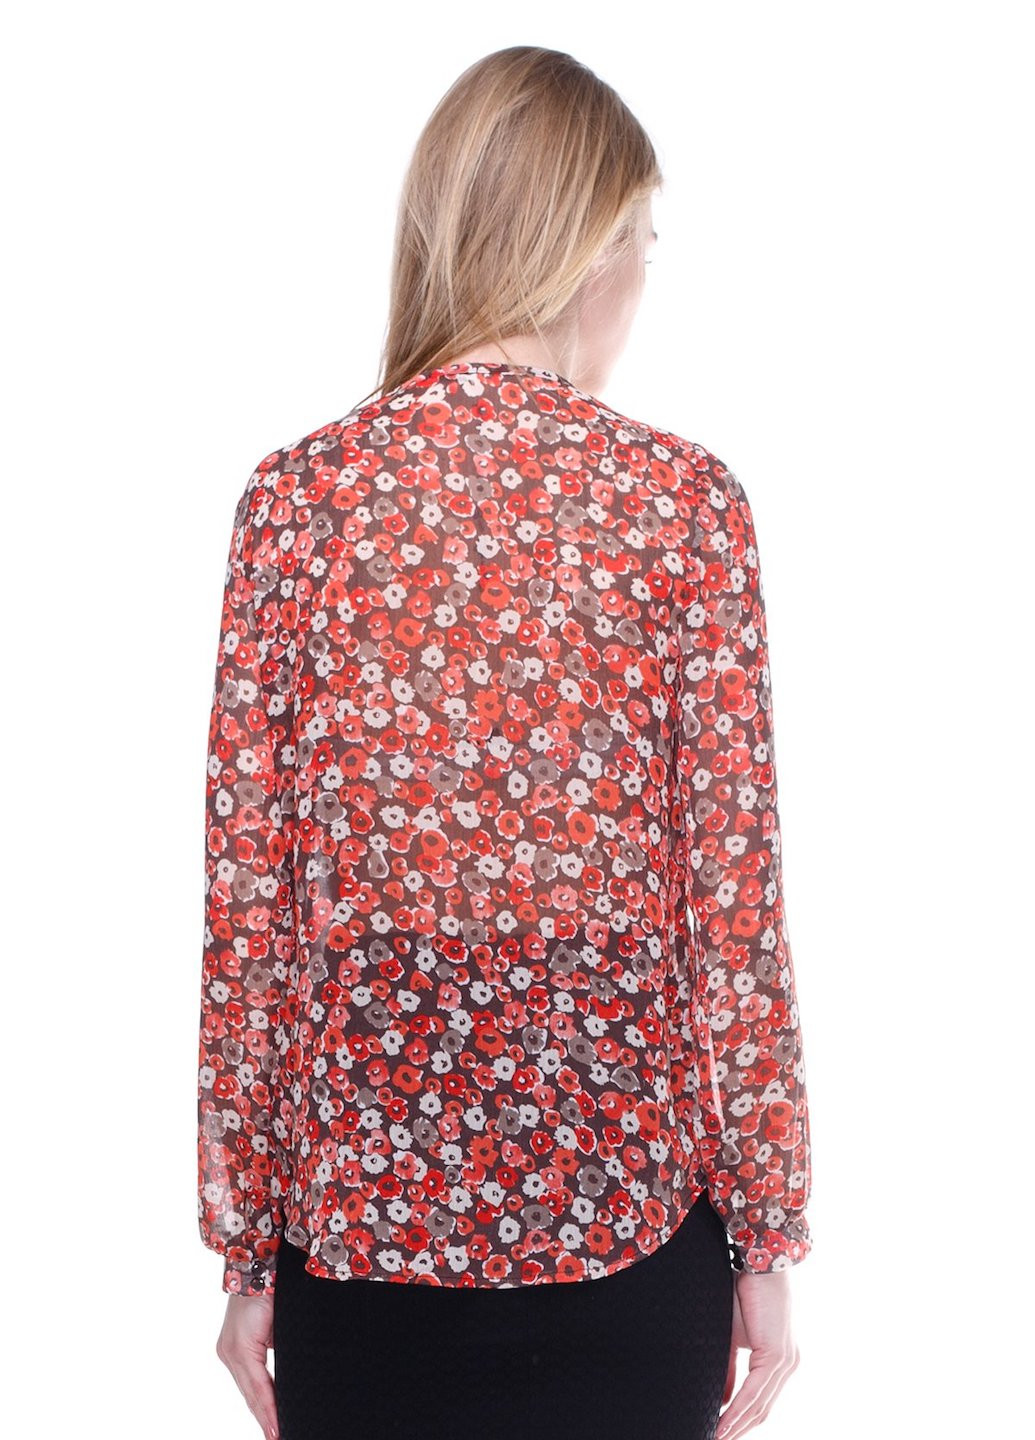 Комбинированная демисезонная блуза роуз шифон оранж цветочек Jet